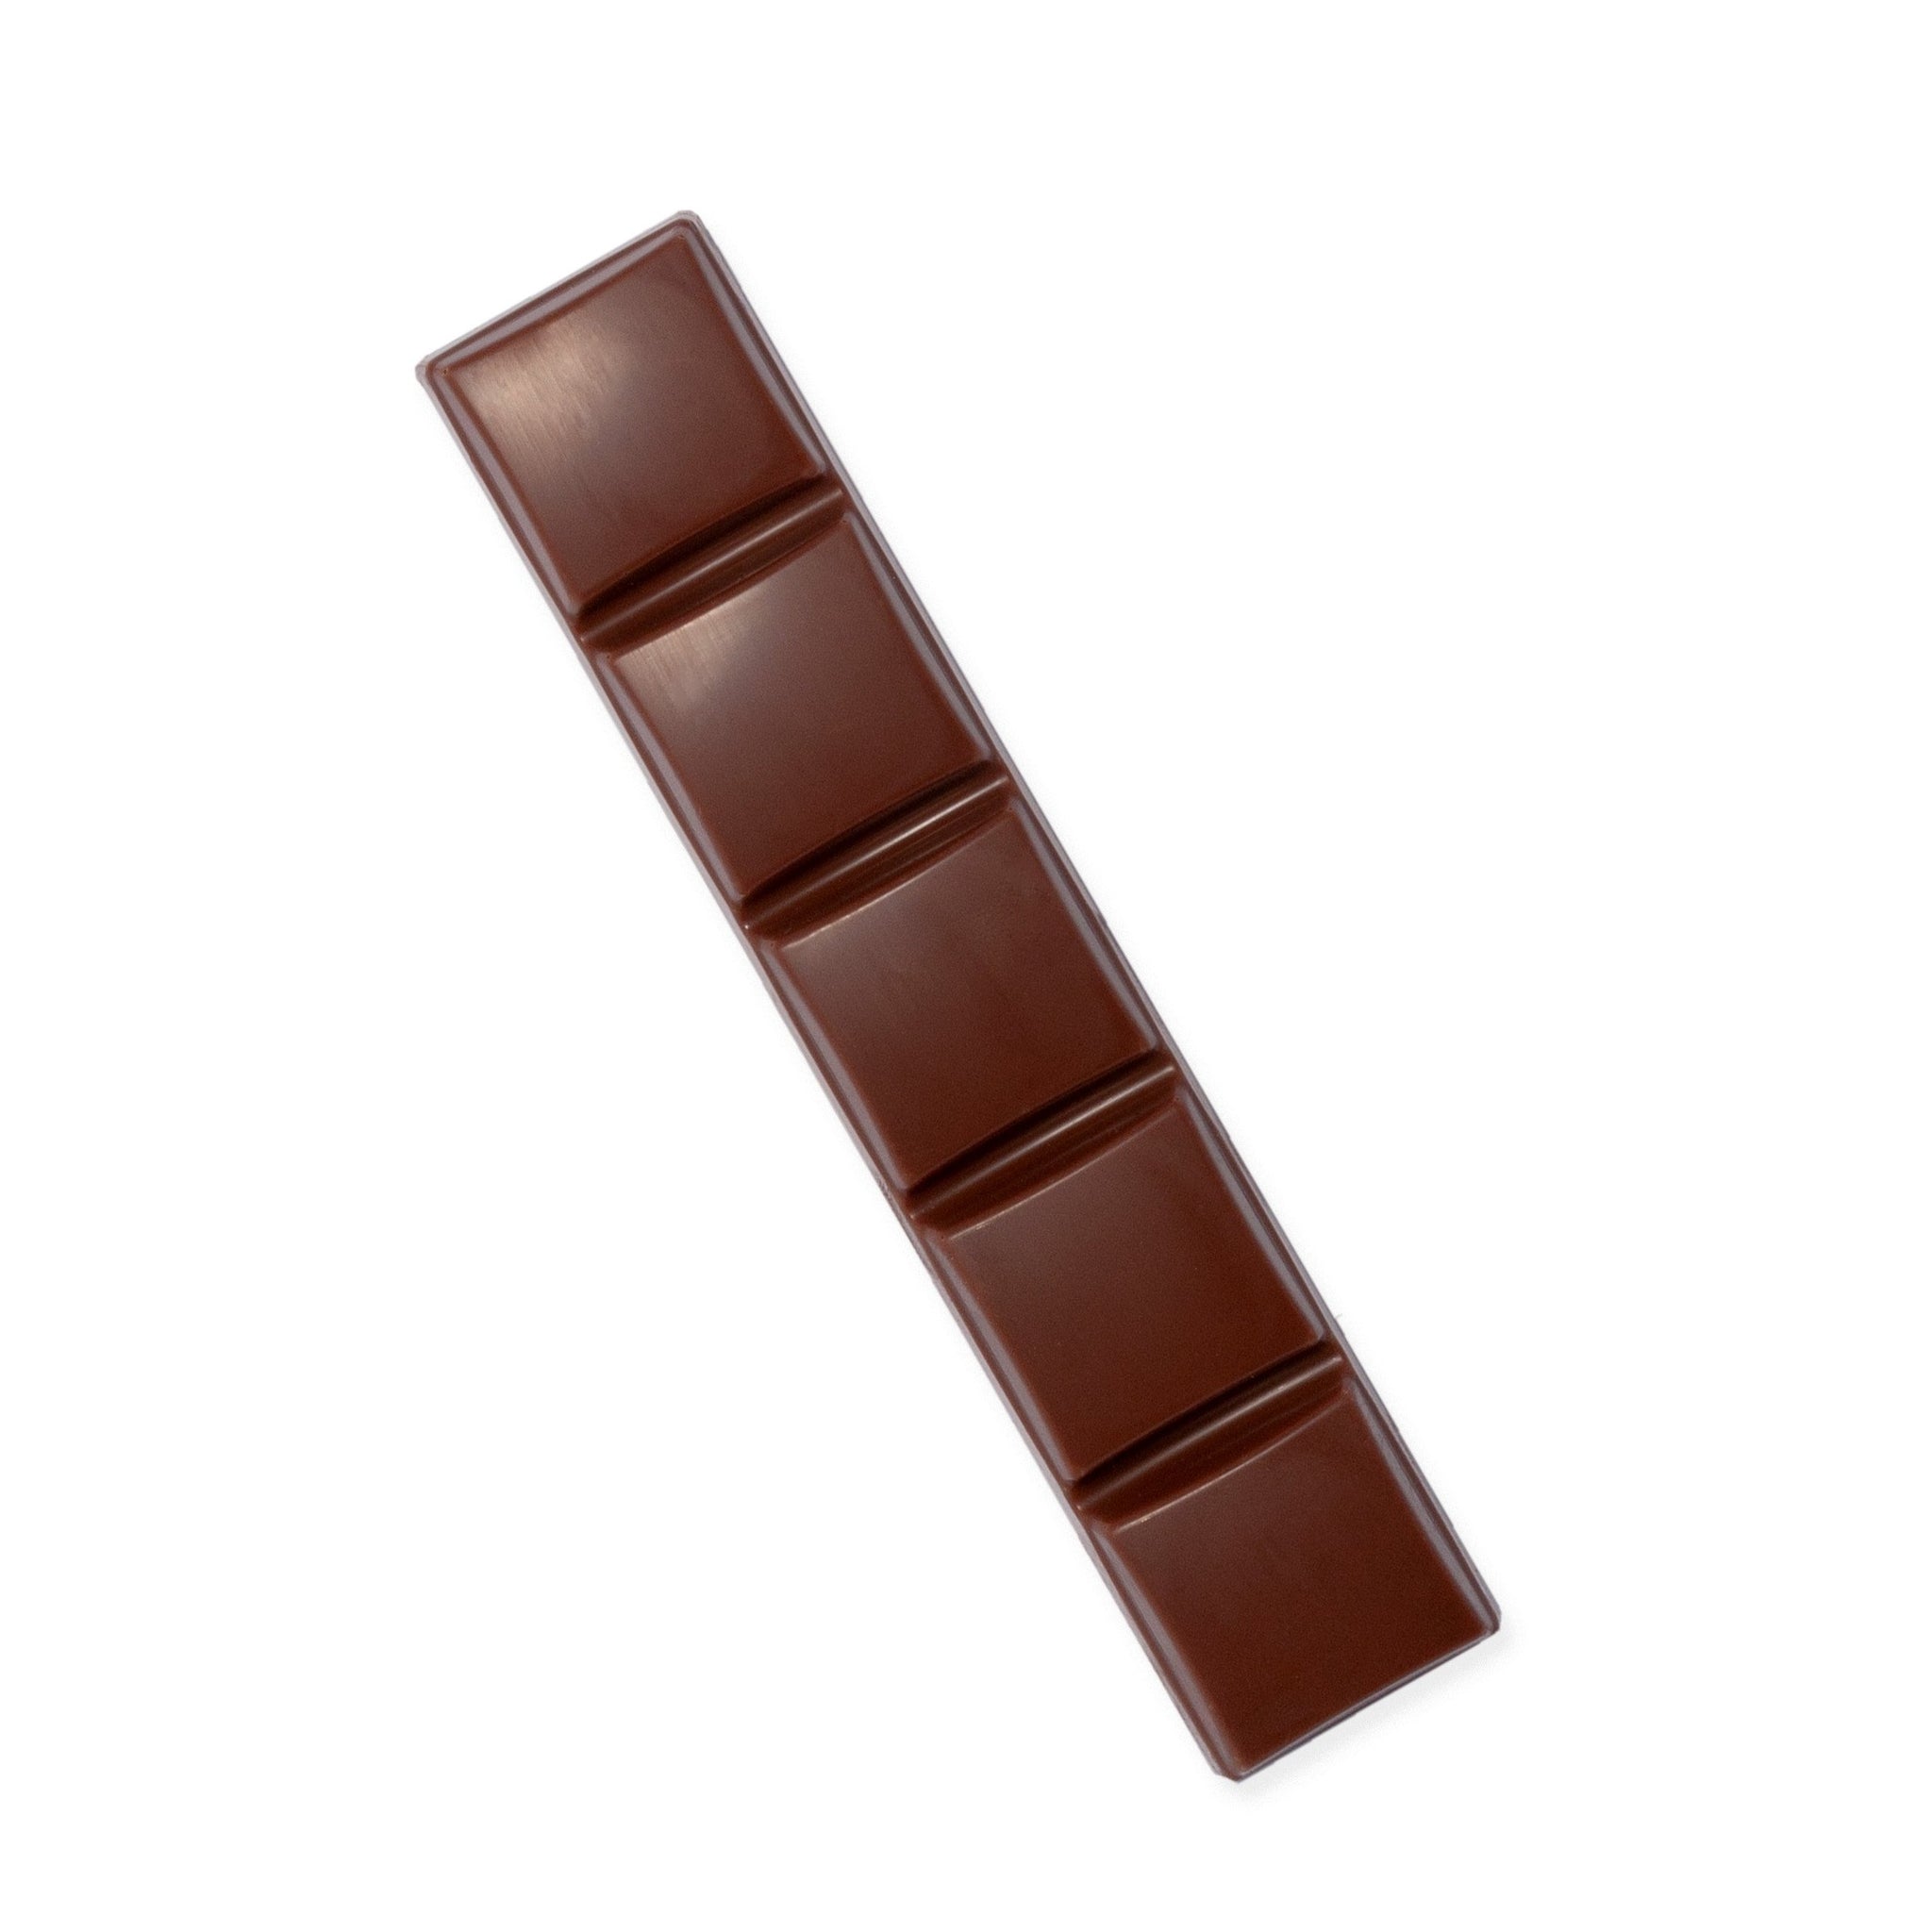 Schokoladenriegel mit 35% Kakaoanteil und Sylter Meersalz